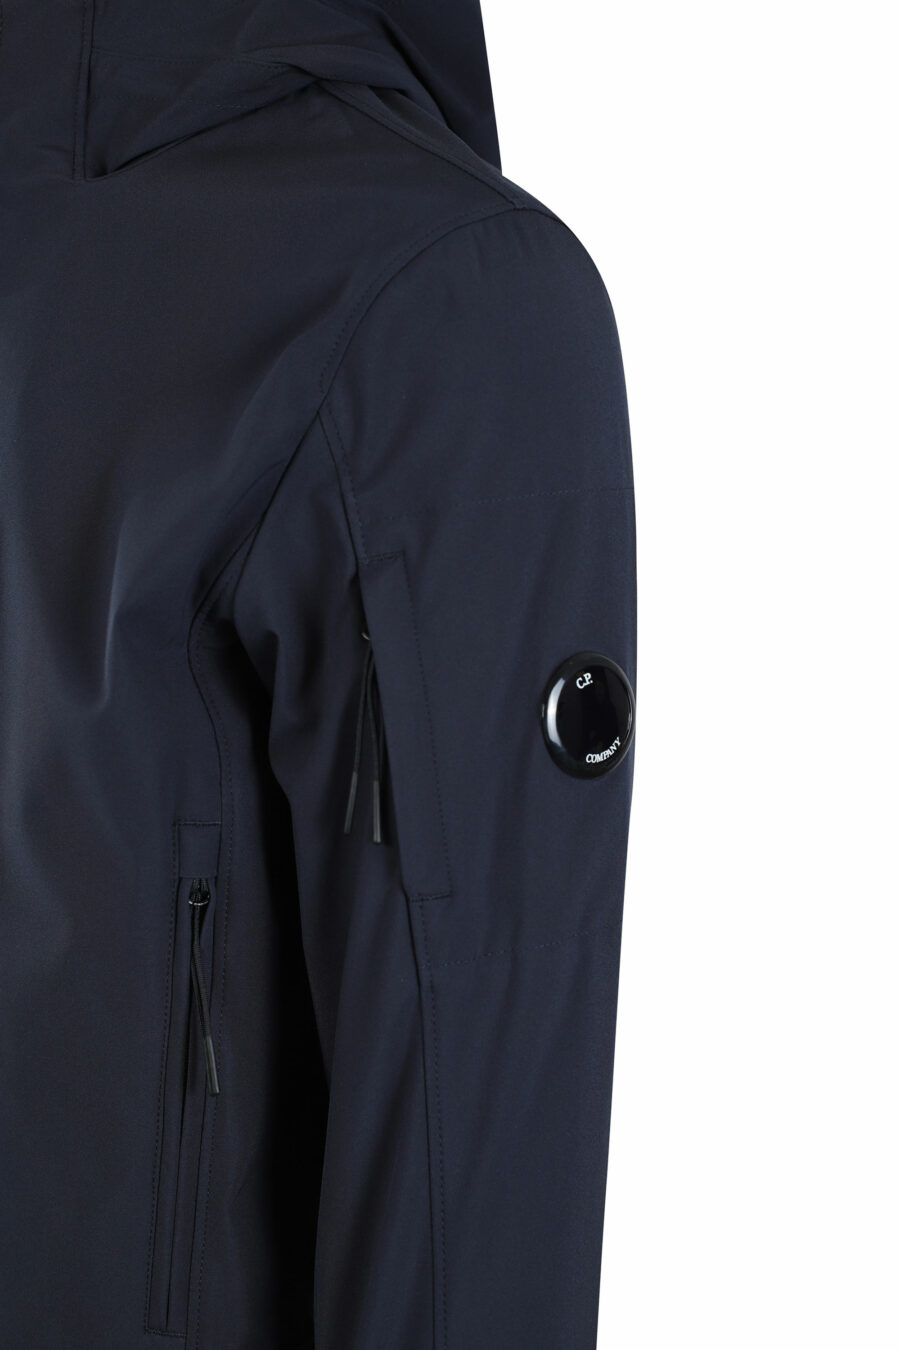 Veste bleu foncé avec capuche et poche latérale avec mini-logo circulaire - IMG 2682